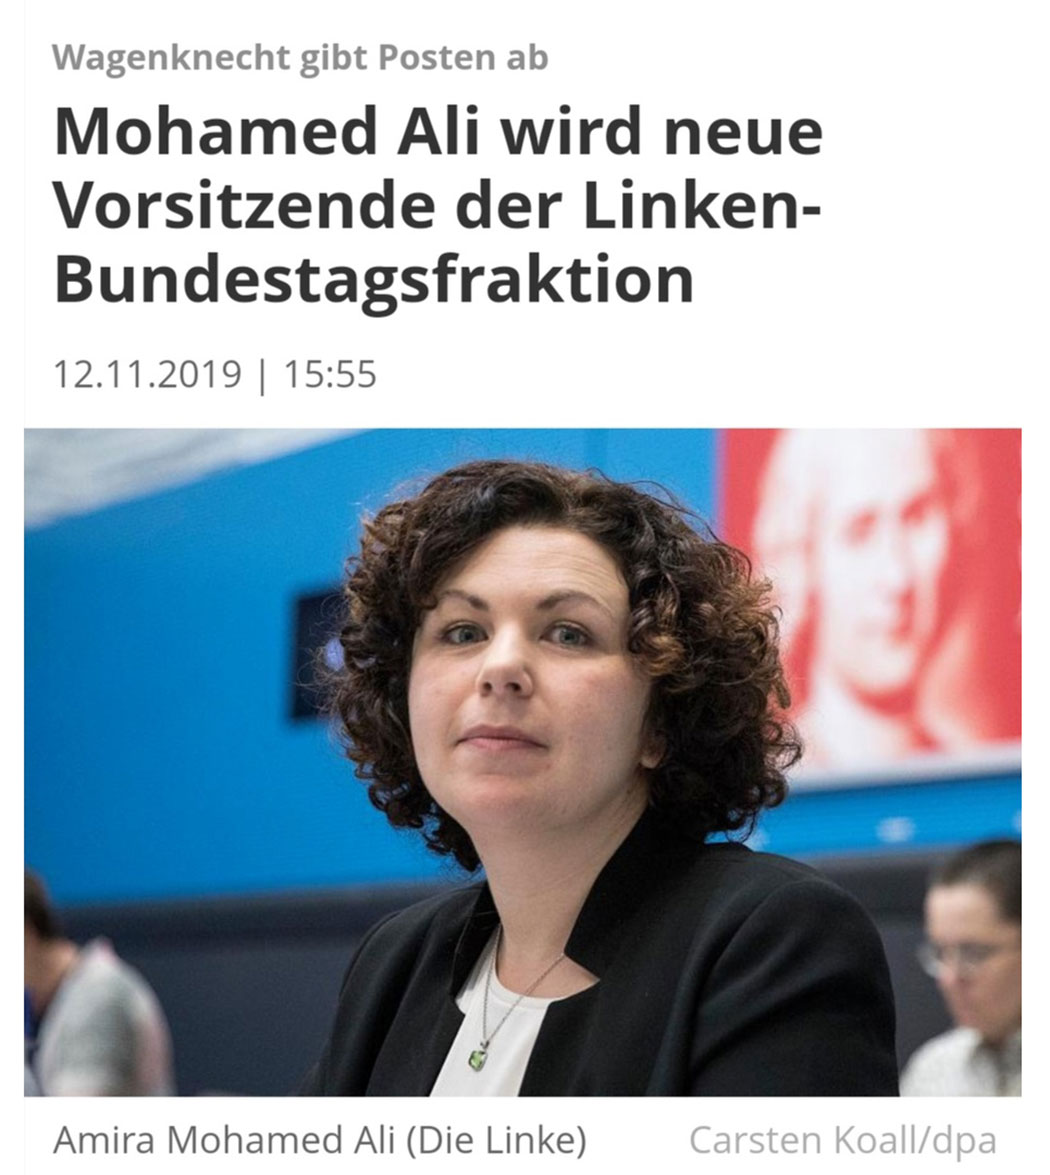 Mohamed Ali wird neue Vorsitzende der Linken-Bundestagsfraktion